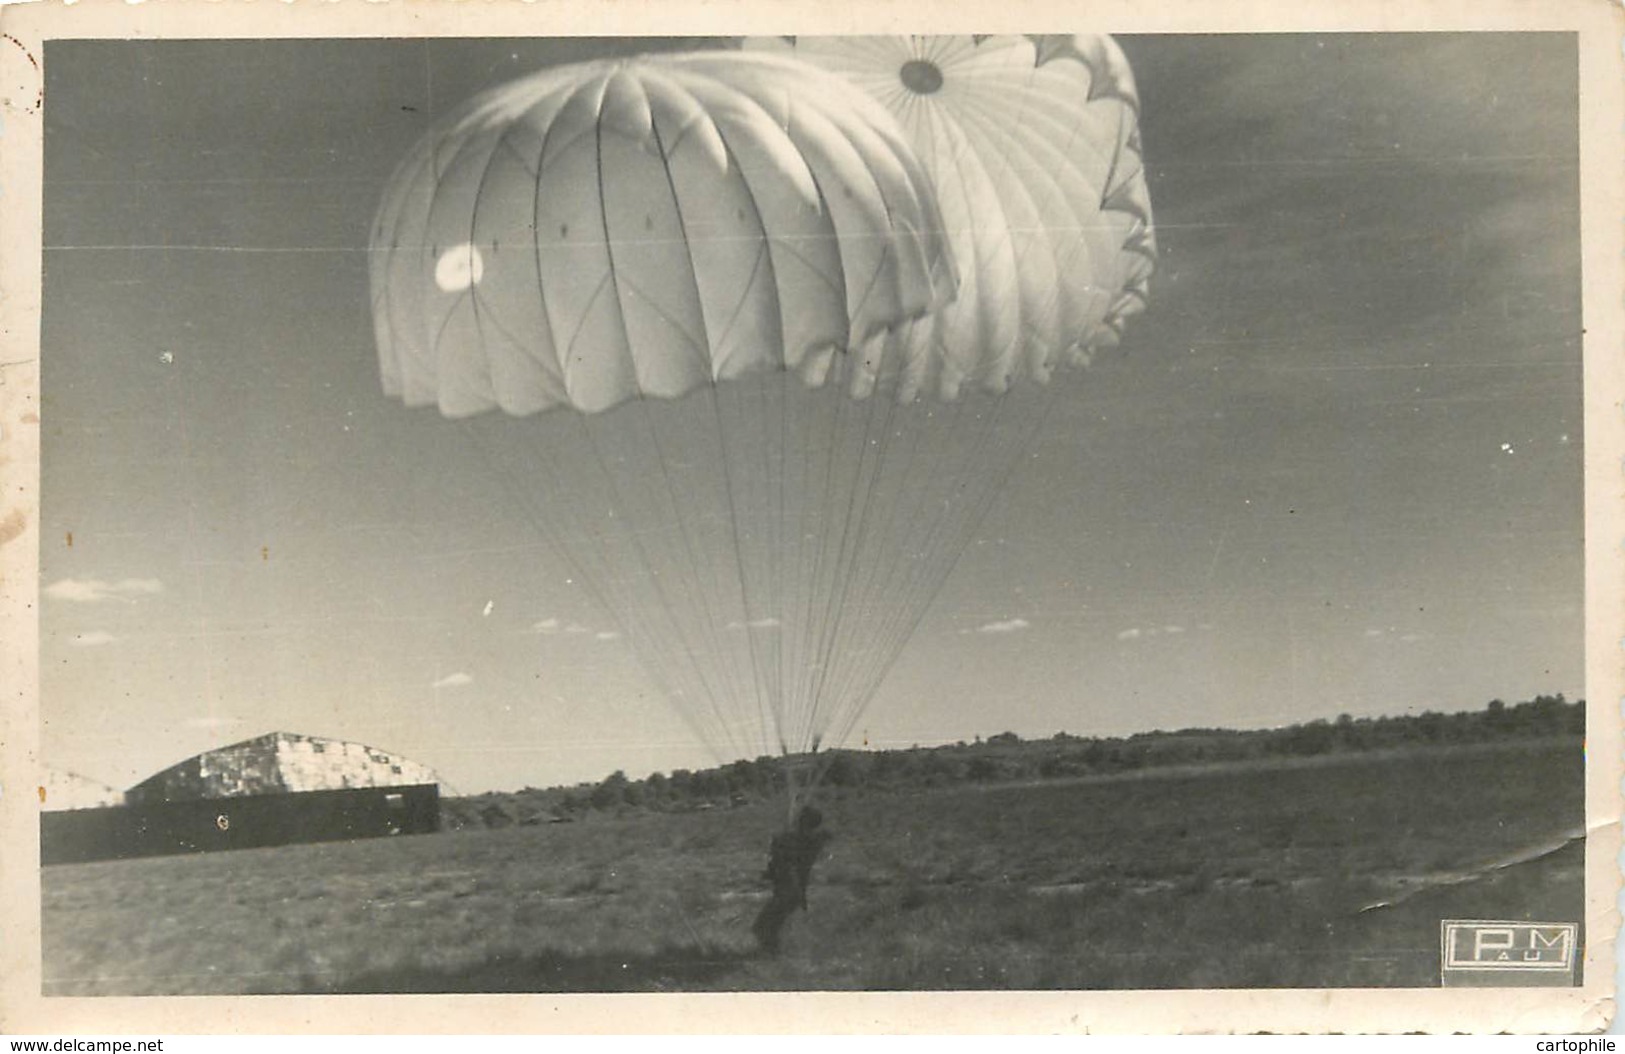 MILITARIA PARACHUTISME - Lot De 2 Photos D'un Saut En Parachute Aux Alentours De PAU Années 1940 - Paracadutismo